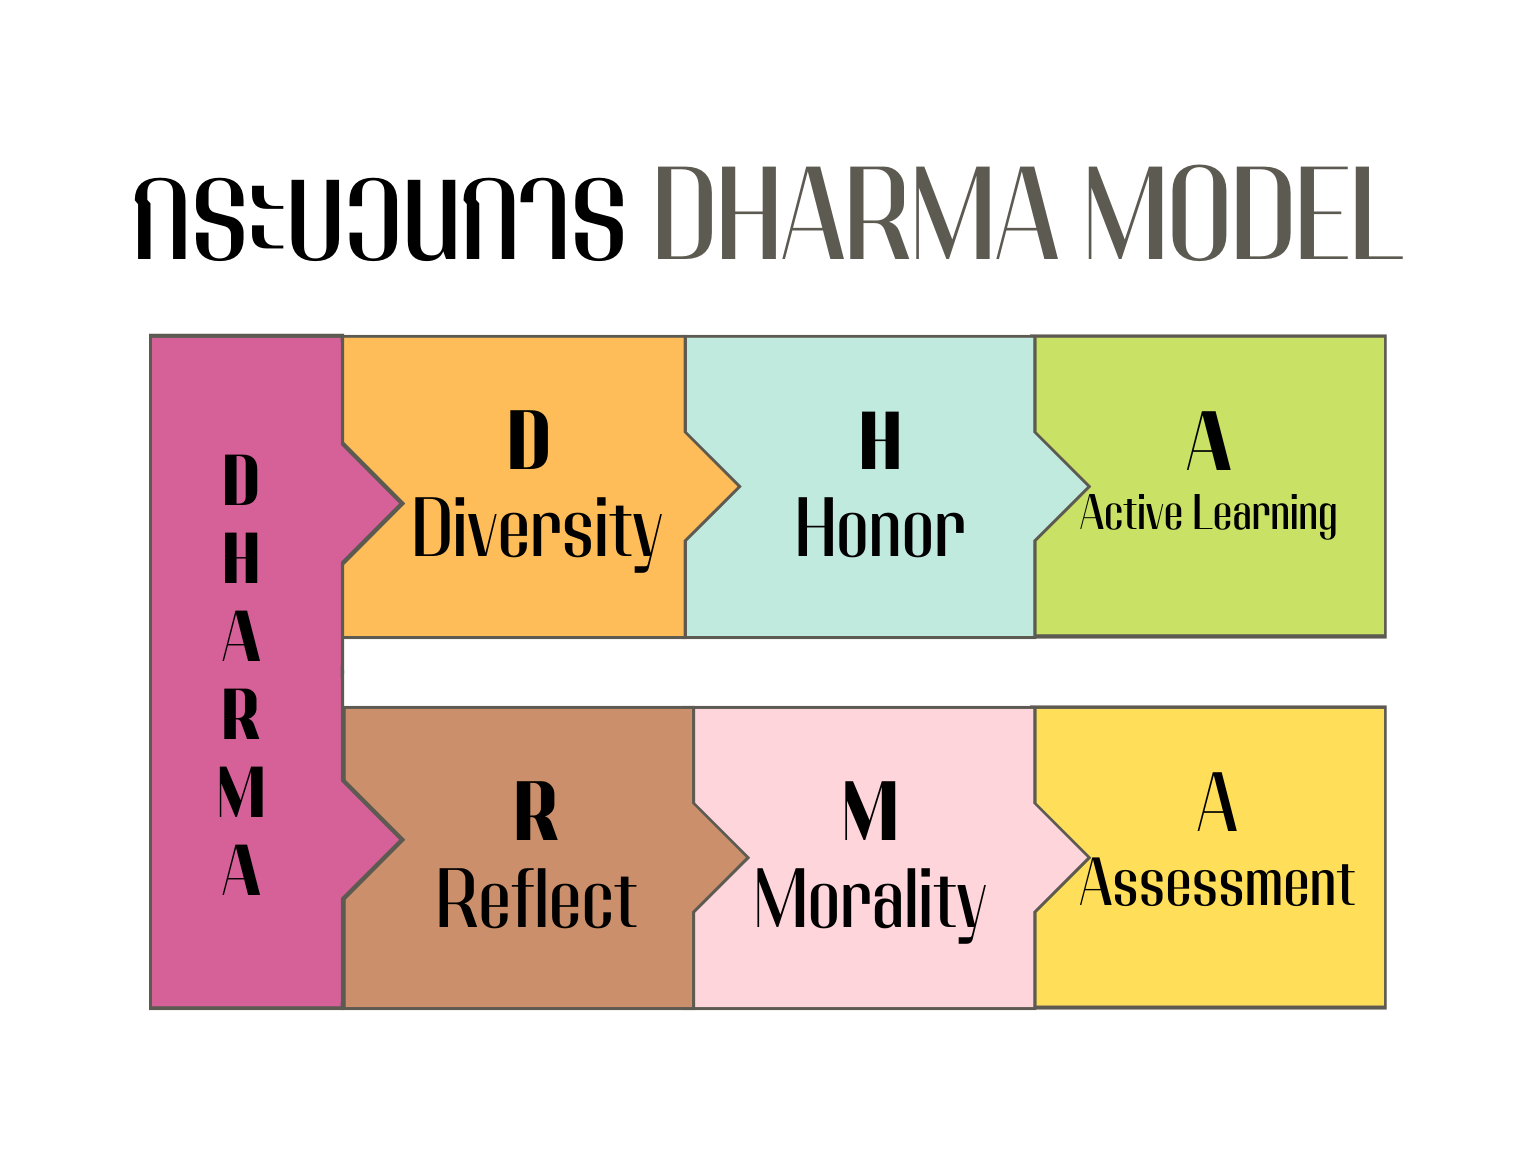 ภาพประกอบไอเดีย รูปแบบการเรียนรู้ DHARMA MODEL 